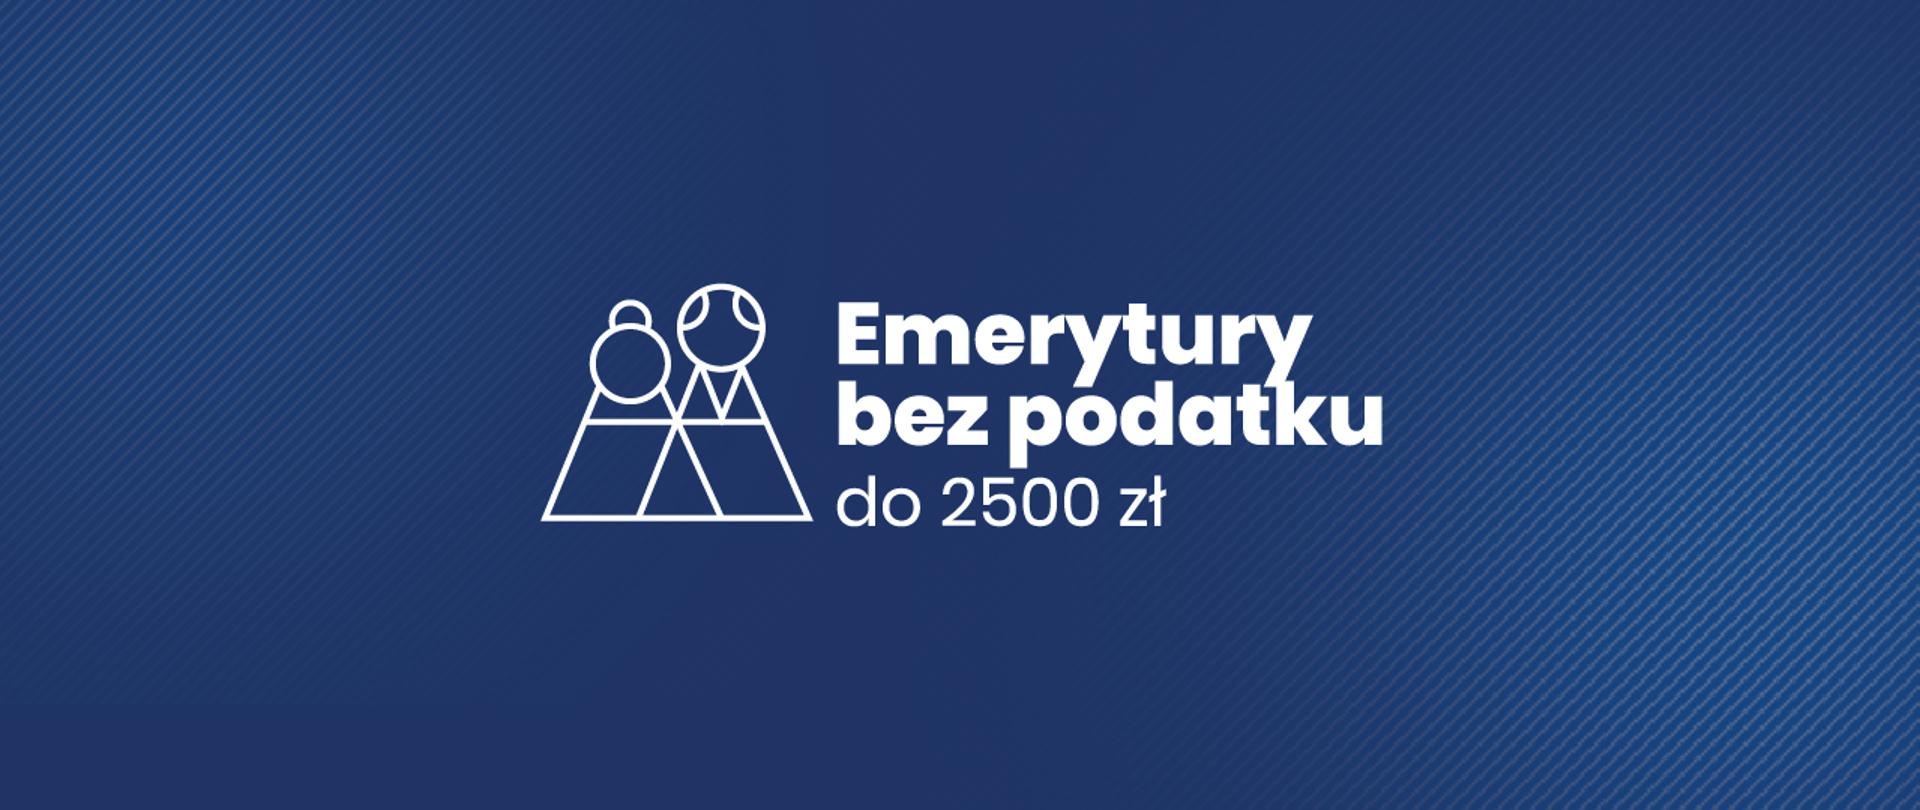 Logo programu Emerytura bez podatku